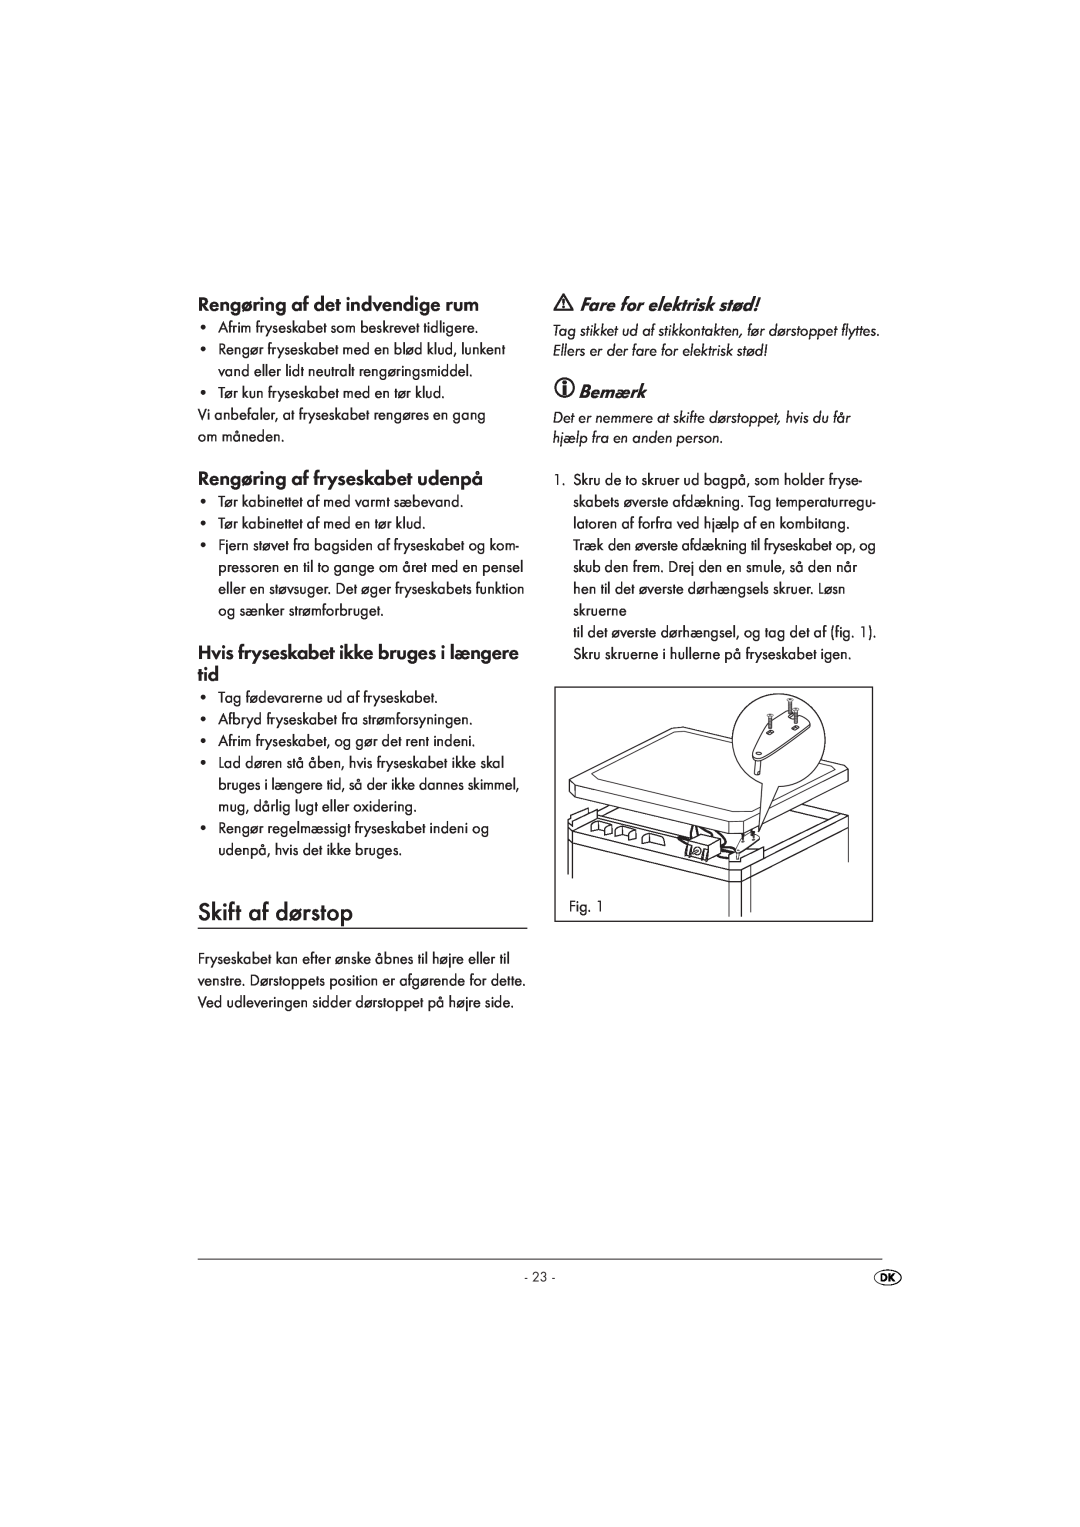 Silvercrest STG 85 manual Skift af dørstop, Fare for elektrisk stød, Bemærk, Afrim fryseskabet som beskrevet tidligere 